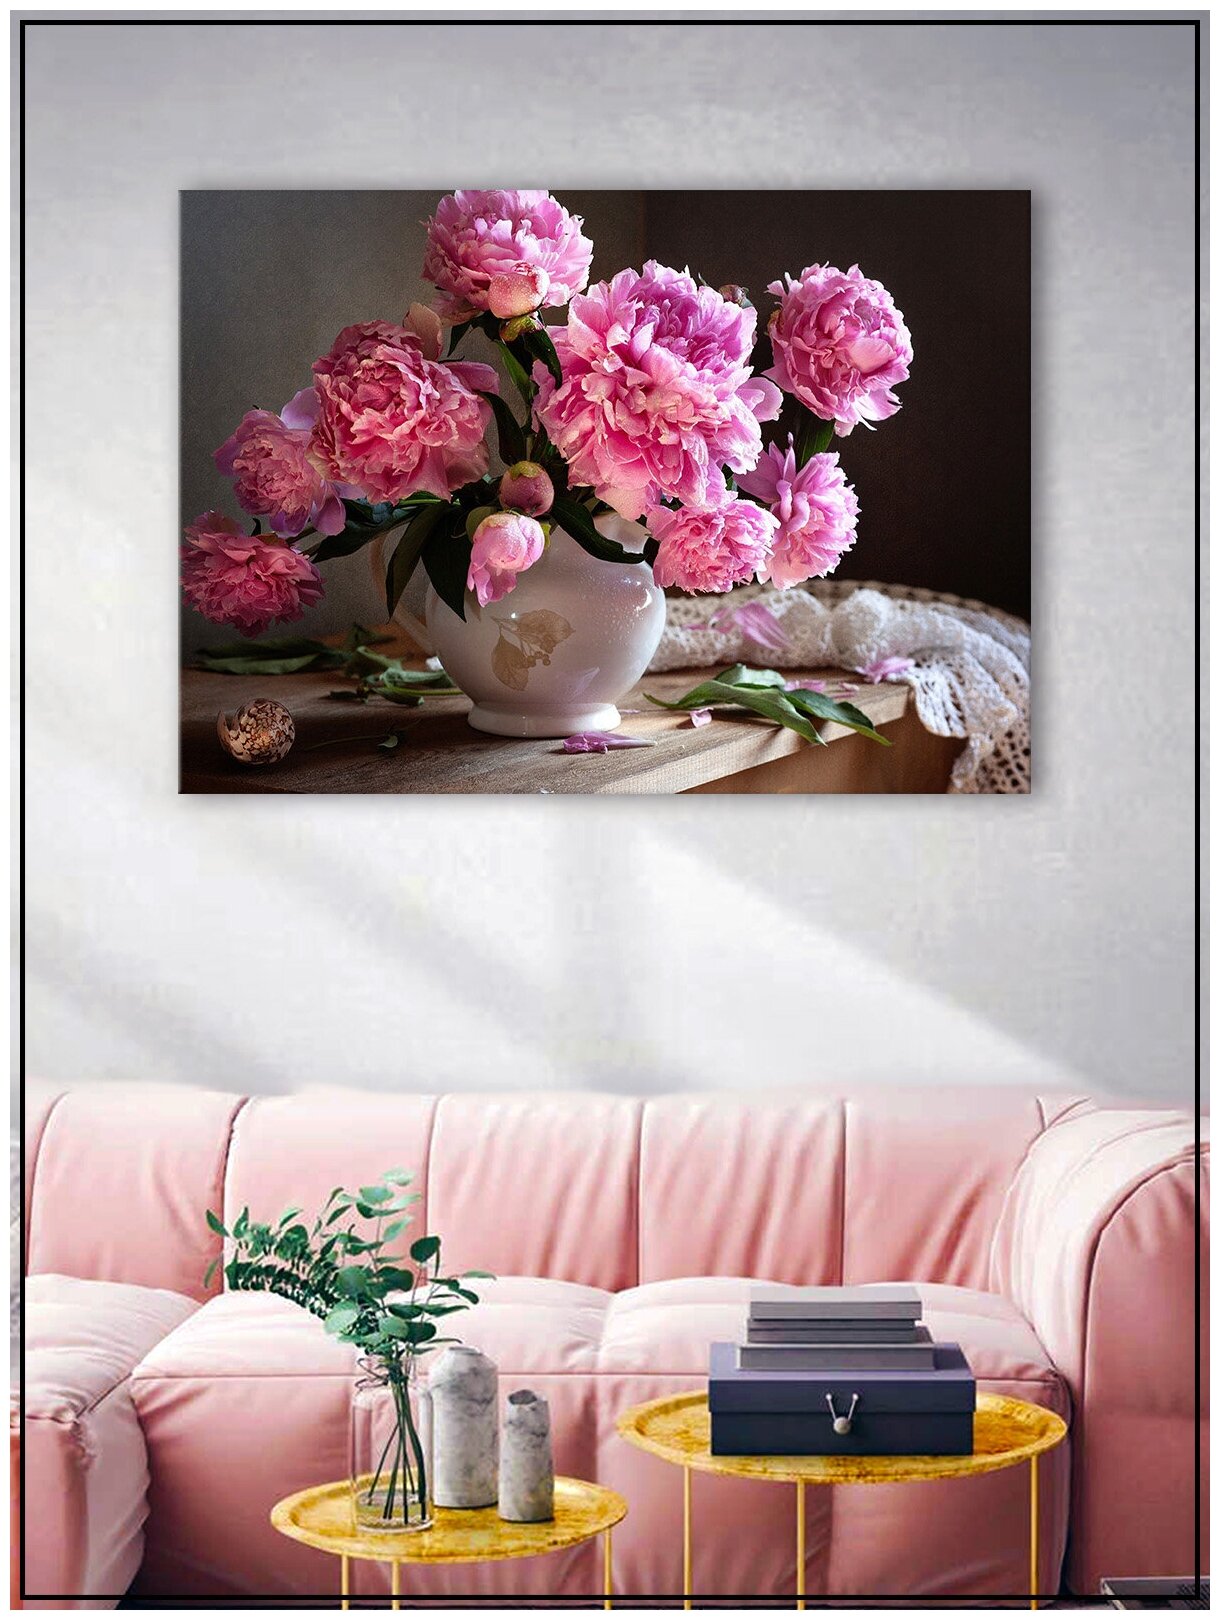 Картина для интерьера на натуральном хлопковом холсте "Пионы в вазе", 38*55см, холст на подрамнике, картина в подарок для дома